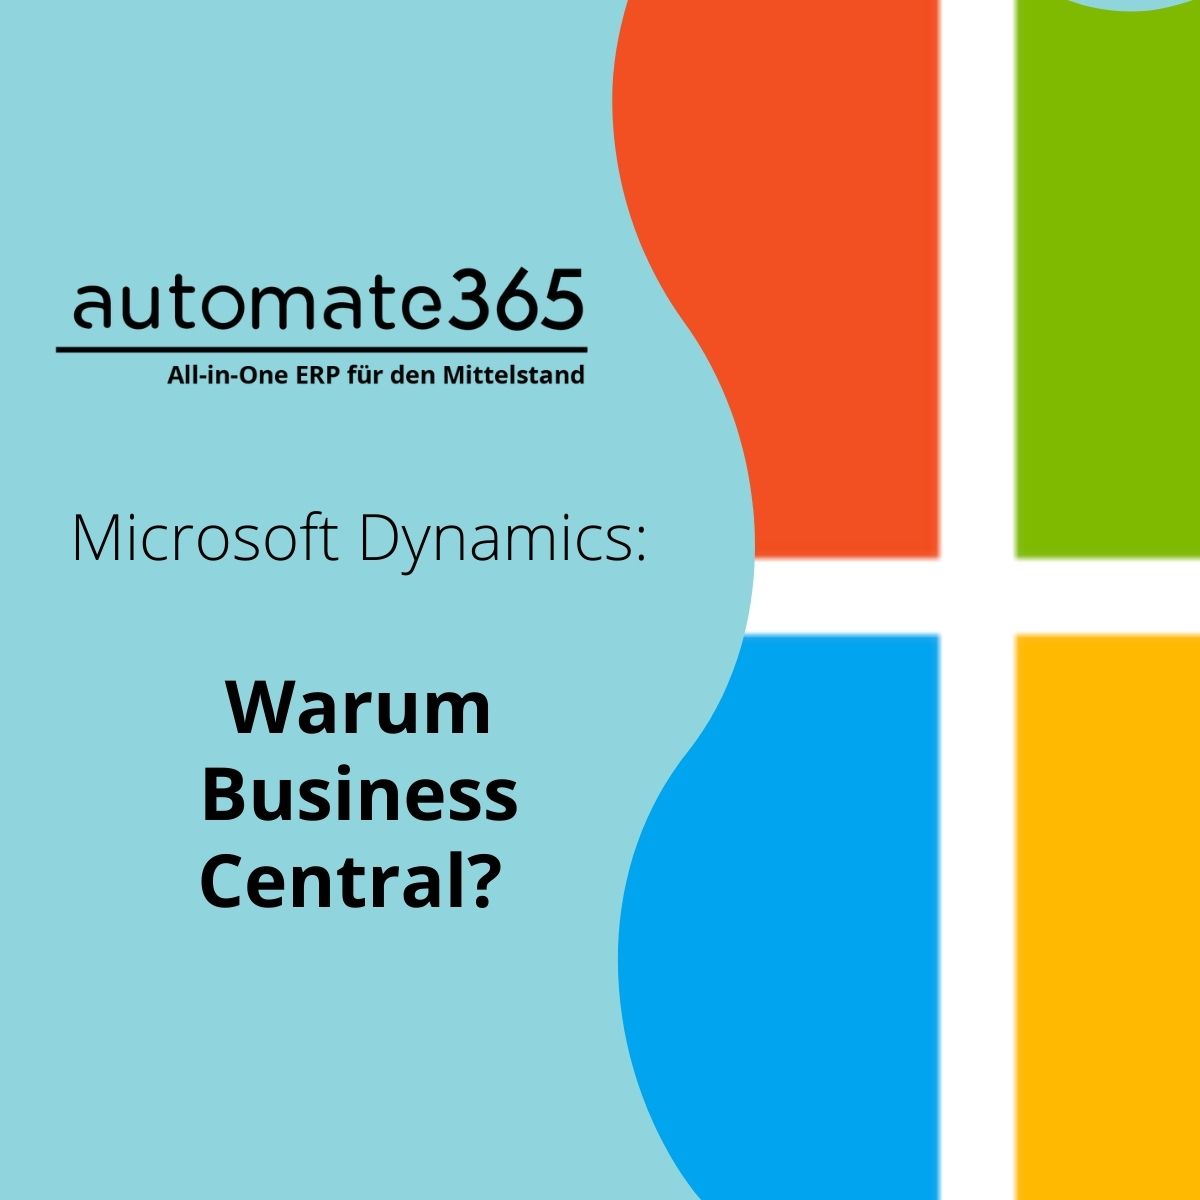 Warum Microsoft Dynamics Business Central und nicht Great Plains